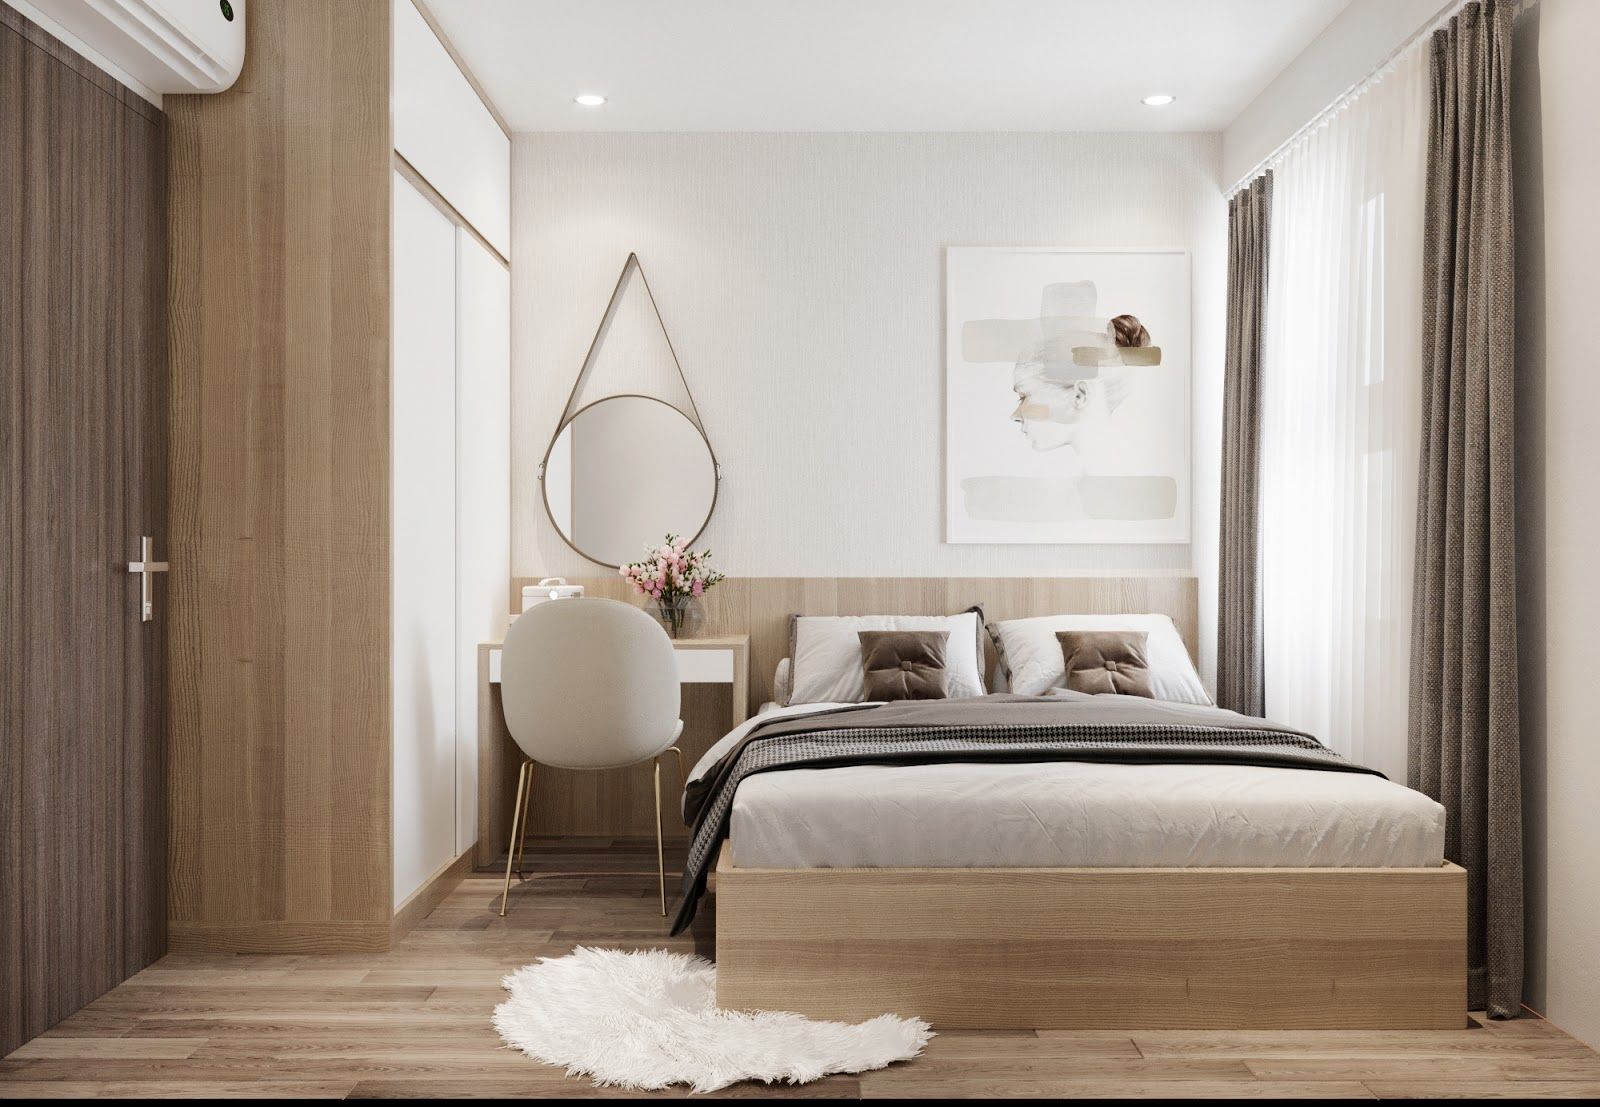 Đặt giường sát vách tường hoặc gần cửa sổ giúp bạn có nhiều không gian hơn